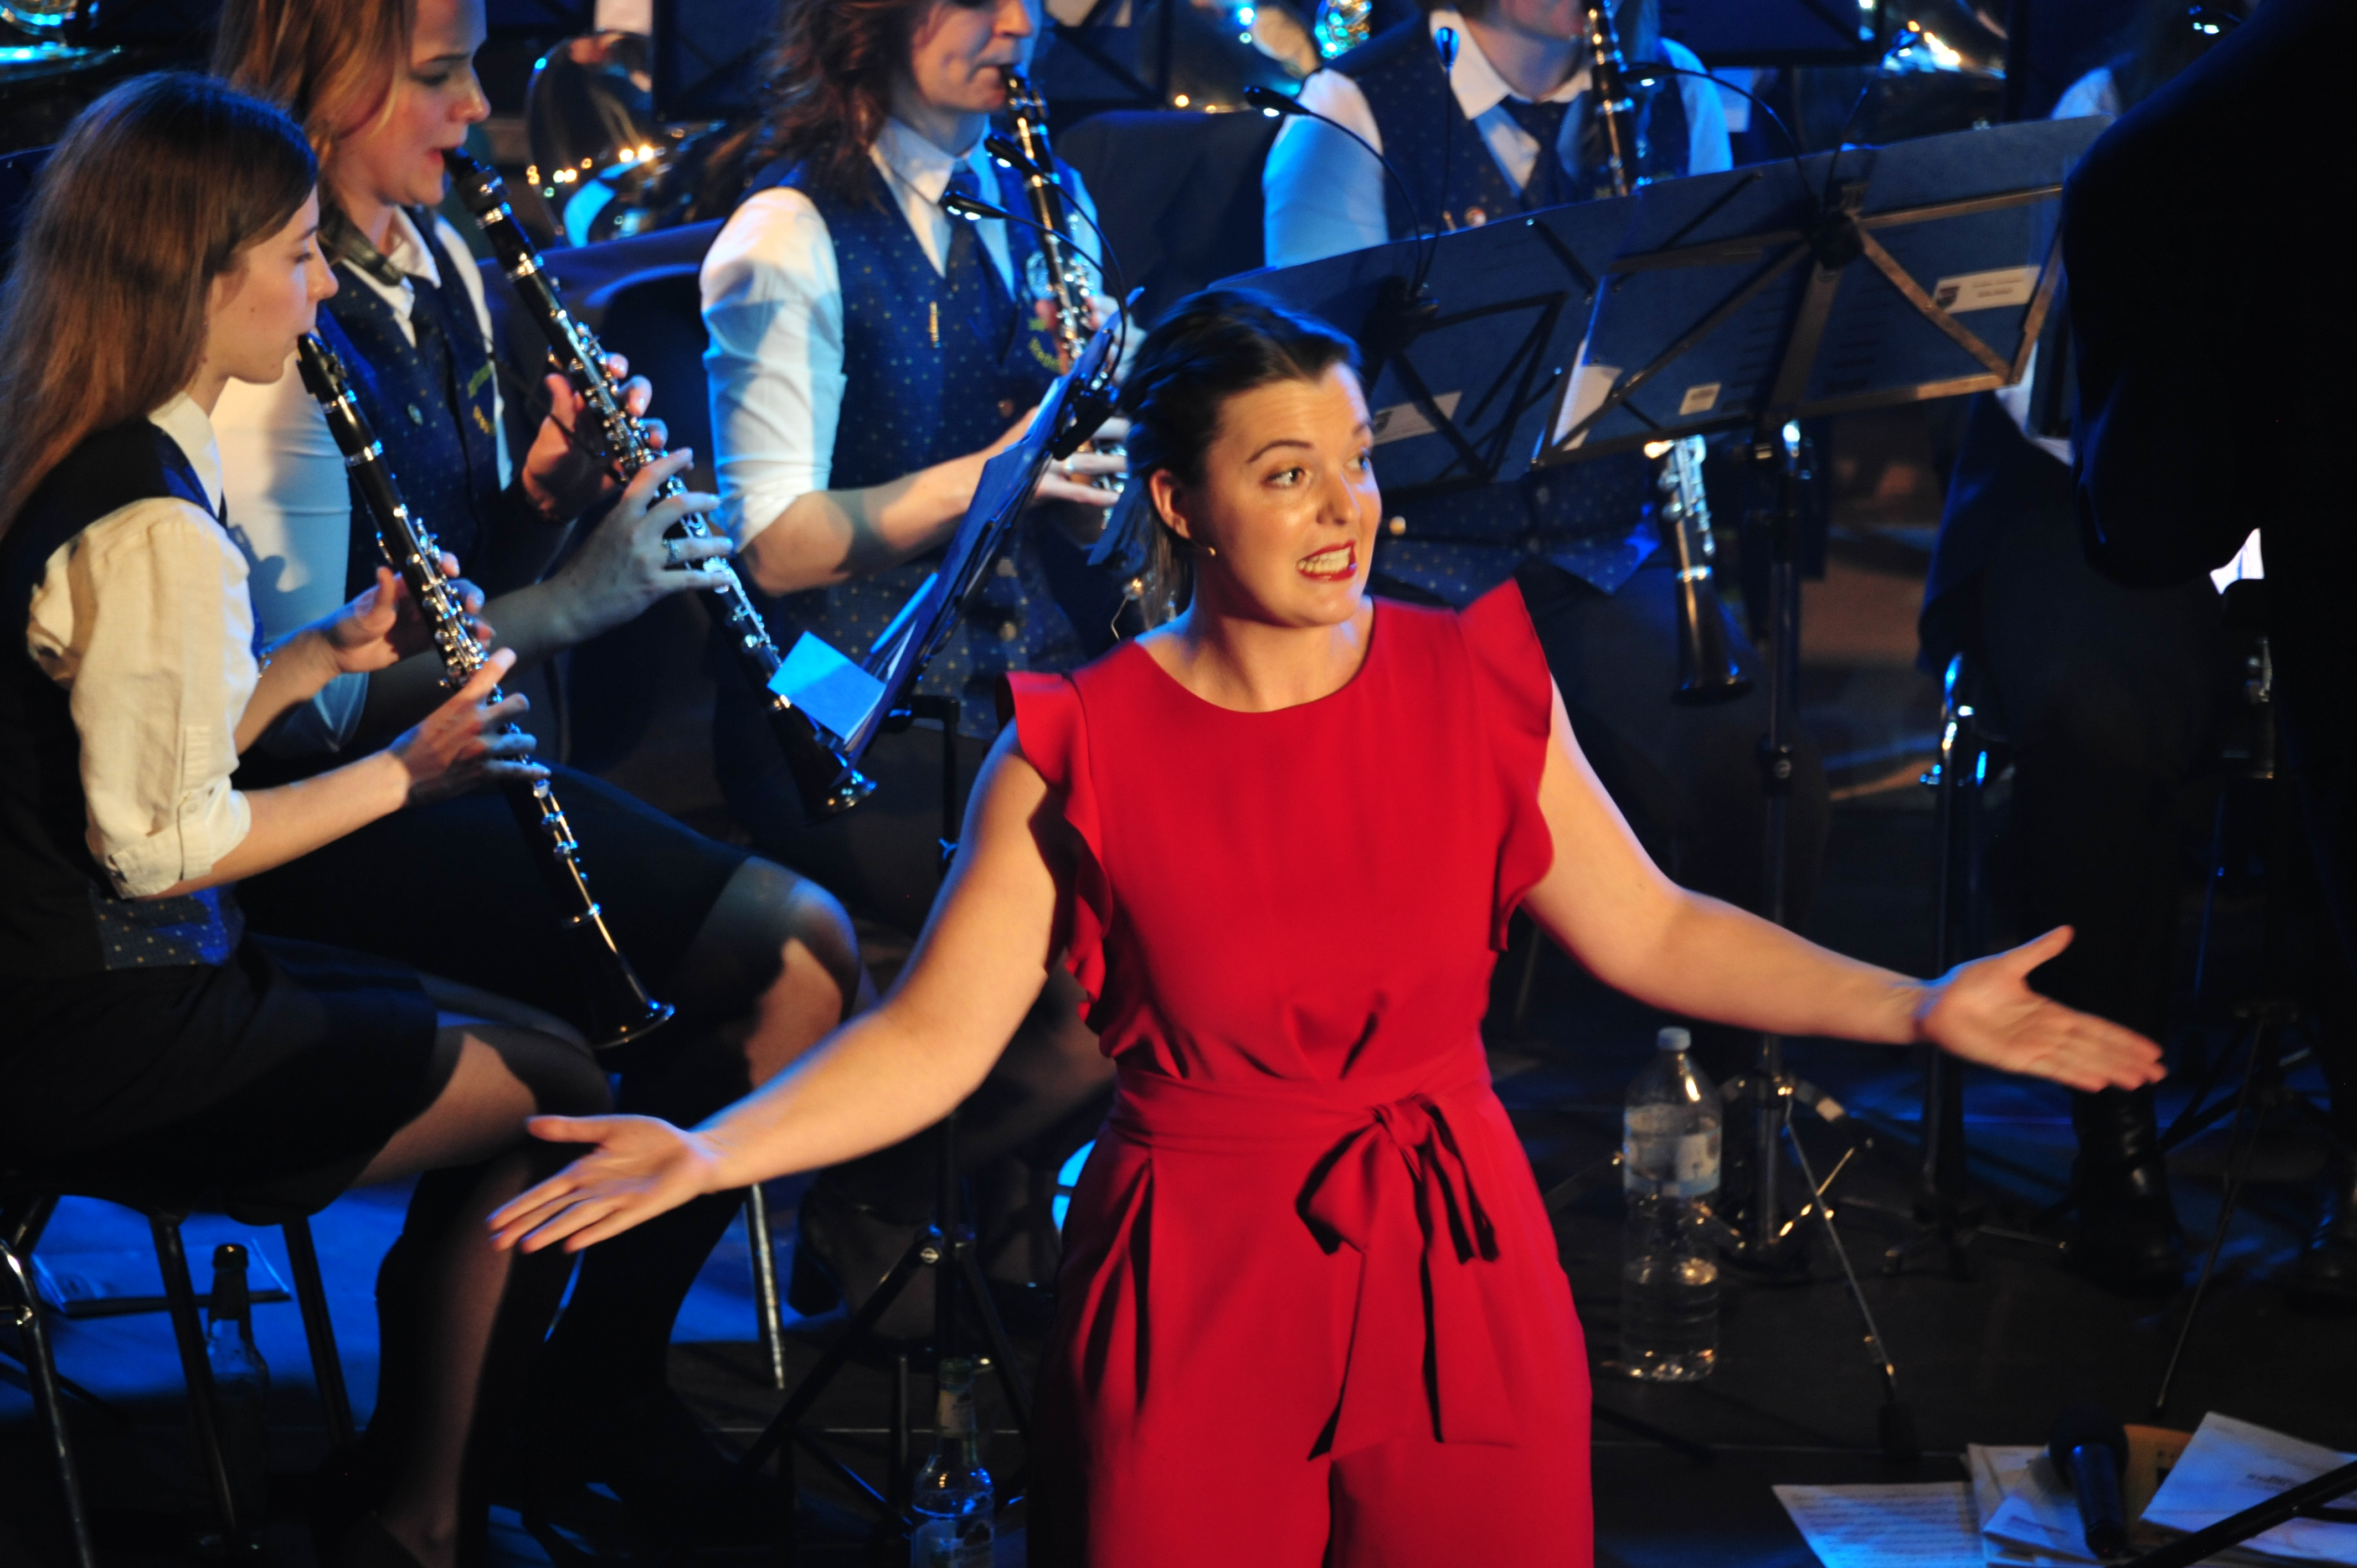 Gastsolistin Paula Meisinger in einer ihrer vielen Gesangsrollen beim Musical-Konzert (2019)